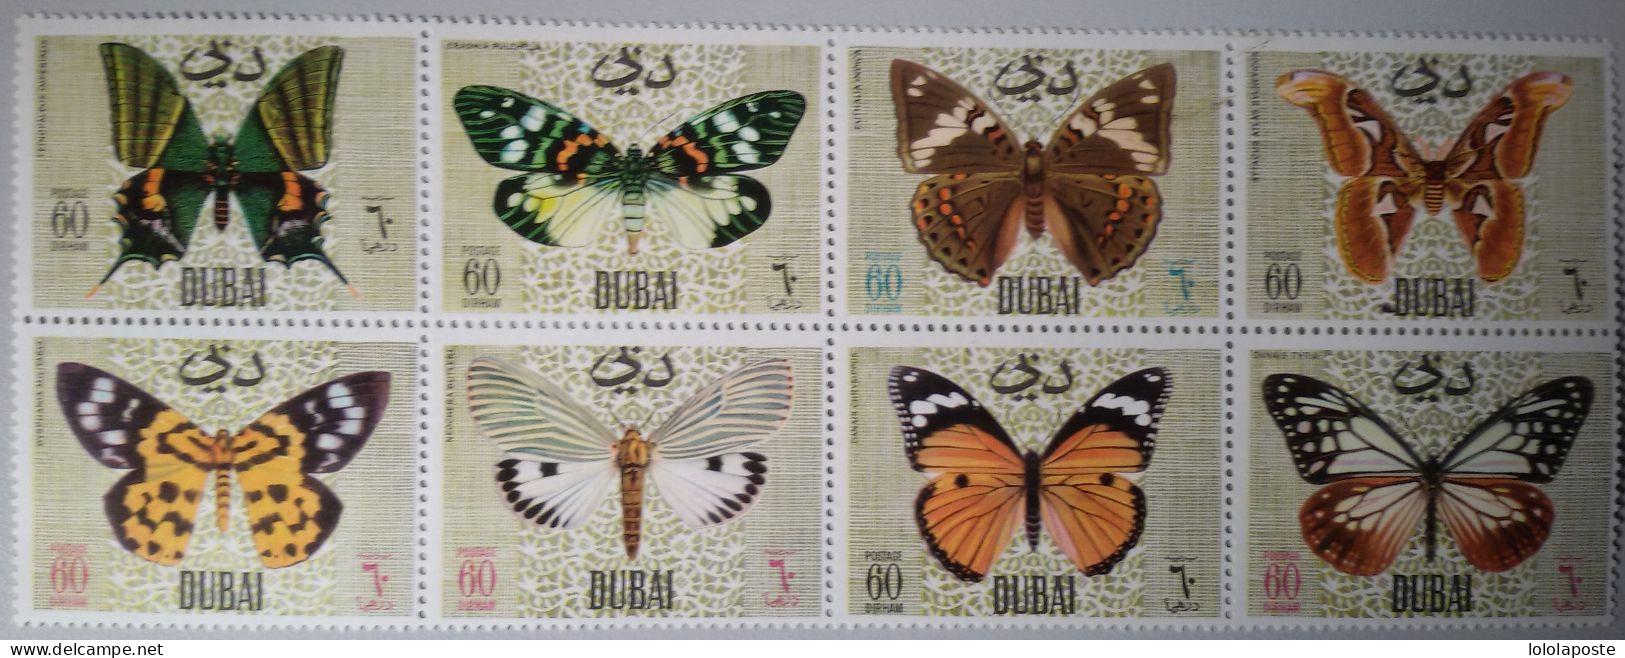 THEME PAPILLONS - BUTTERFLIES - DUBAI - Bloc De 8 Timbres Différents - Papillons